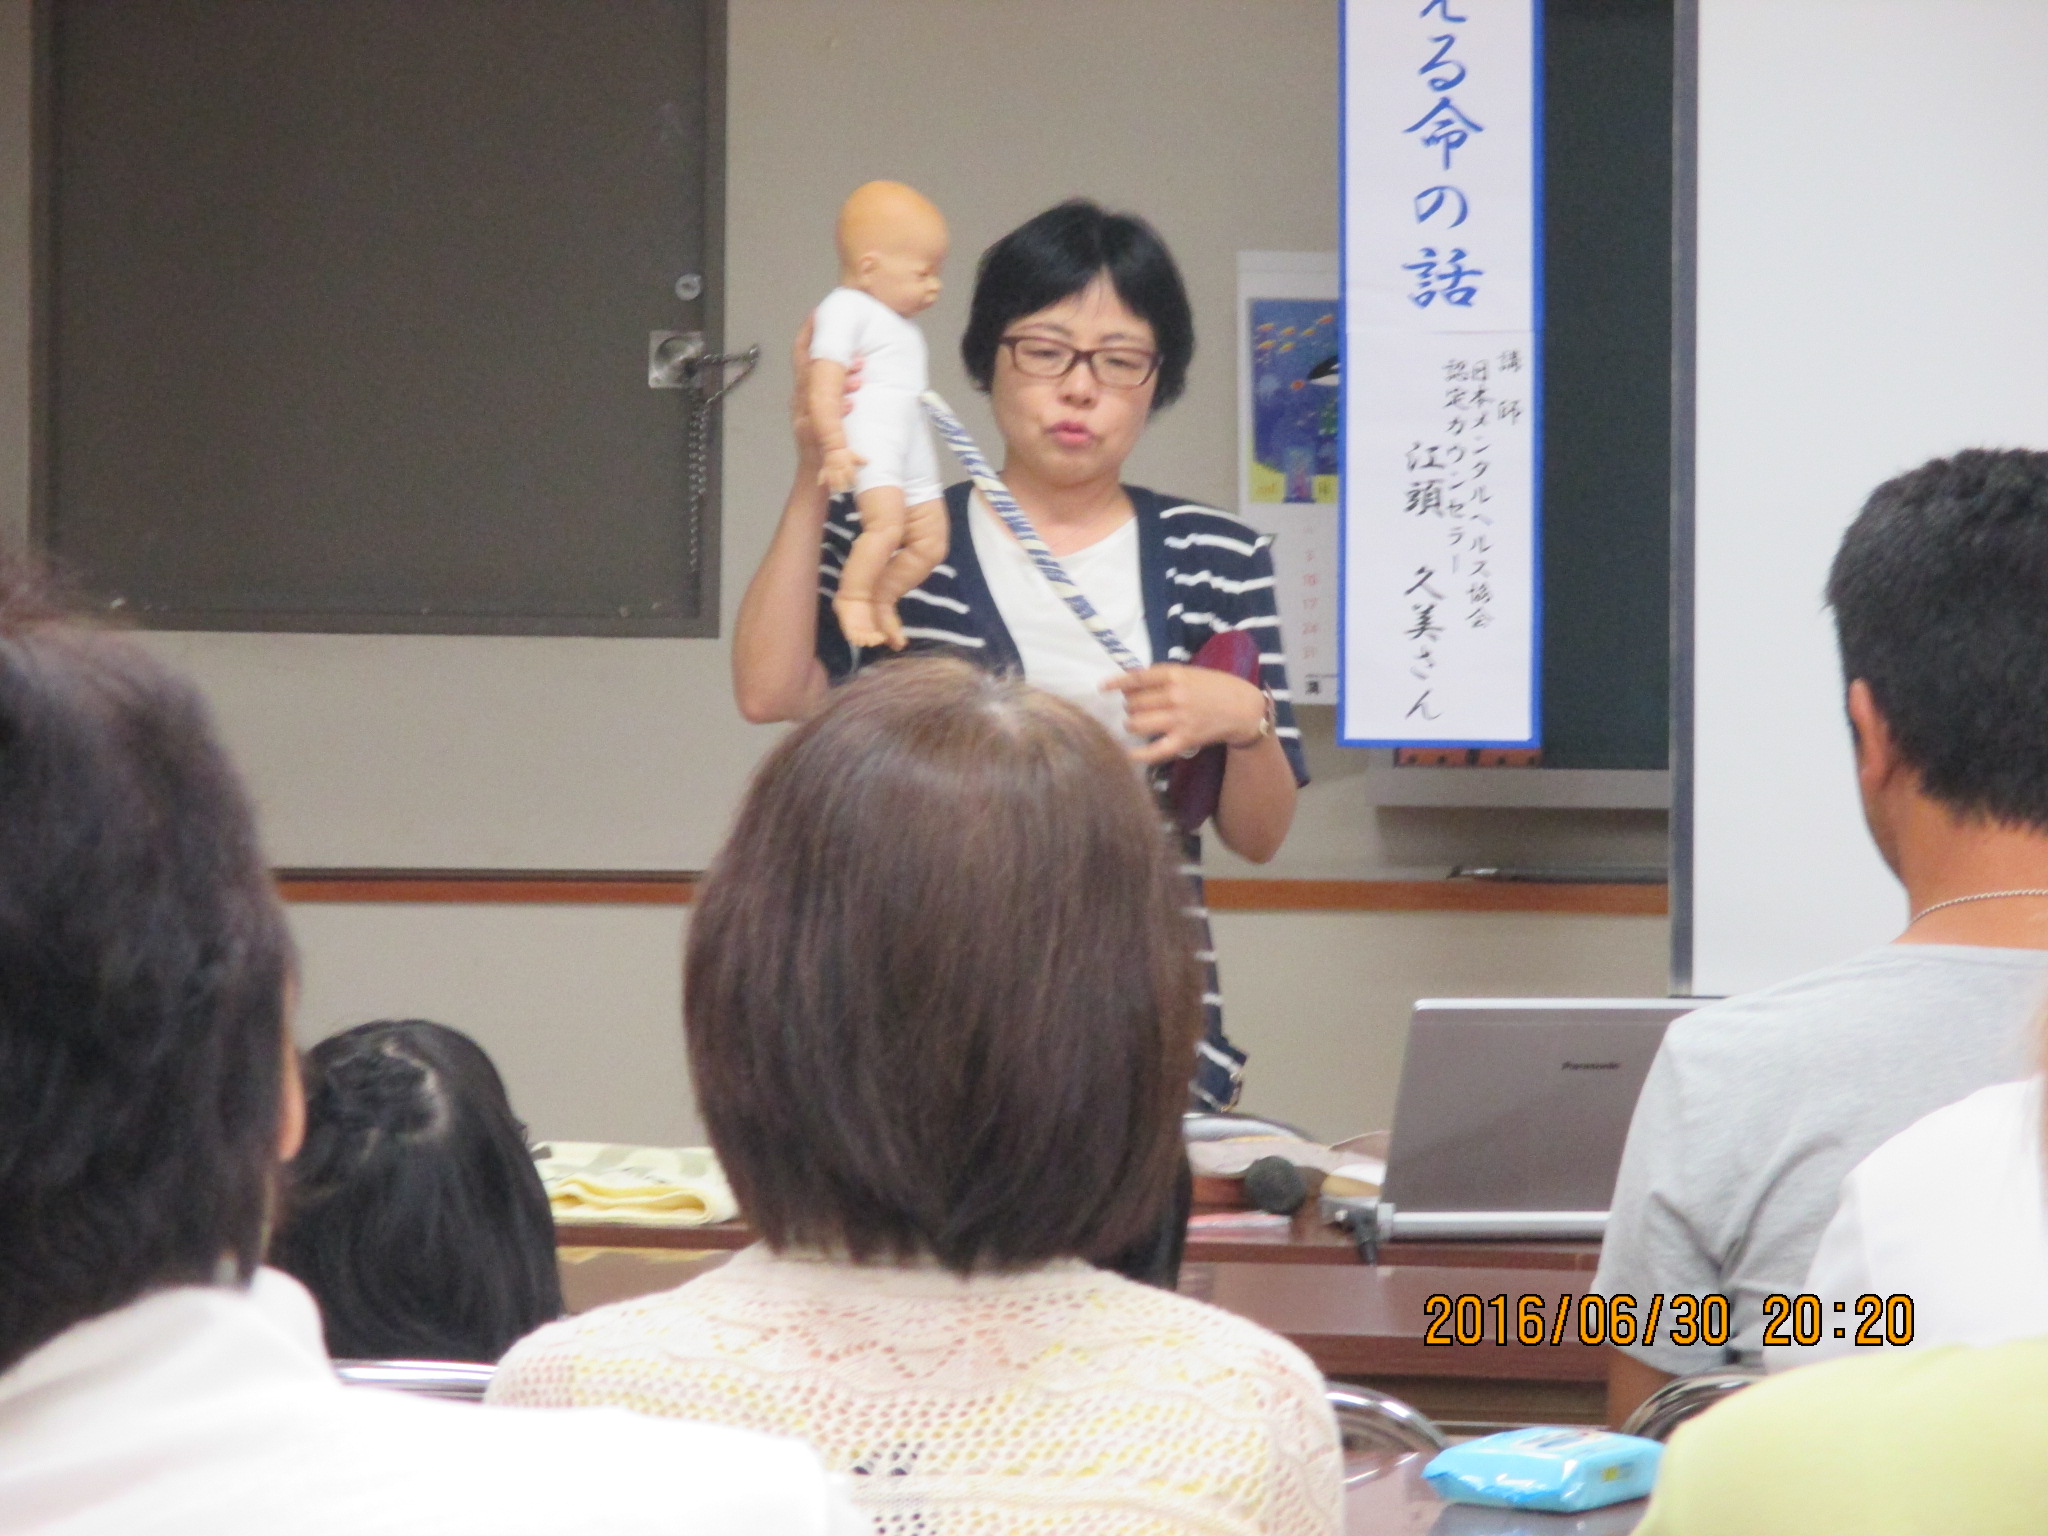 赤ちゃん人形をもって話す講師の写真